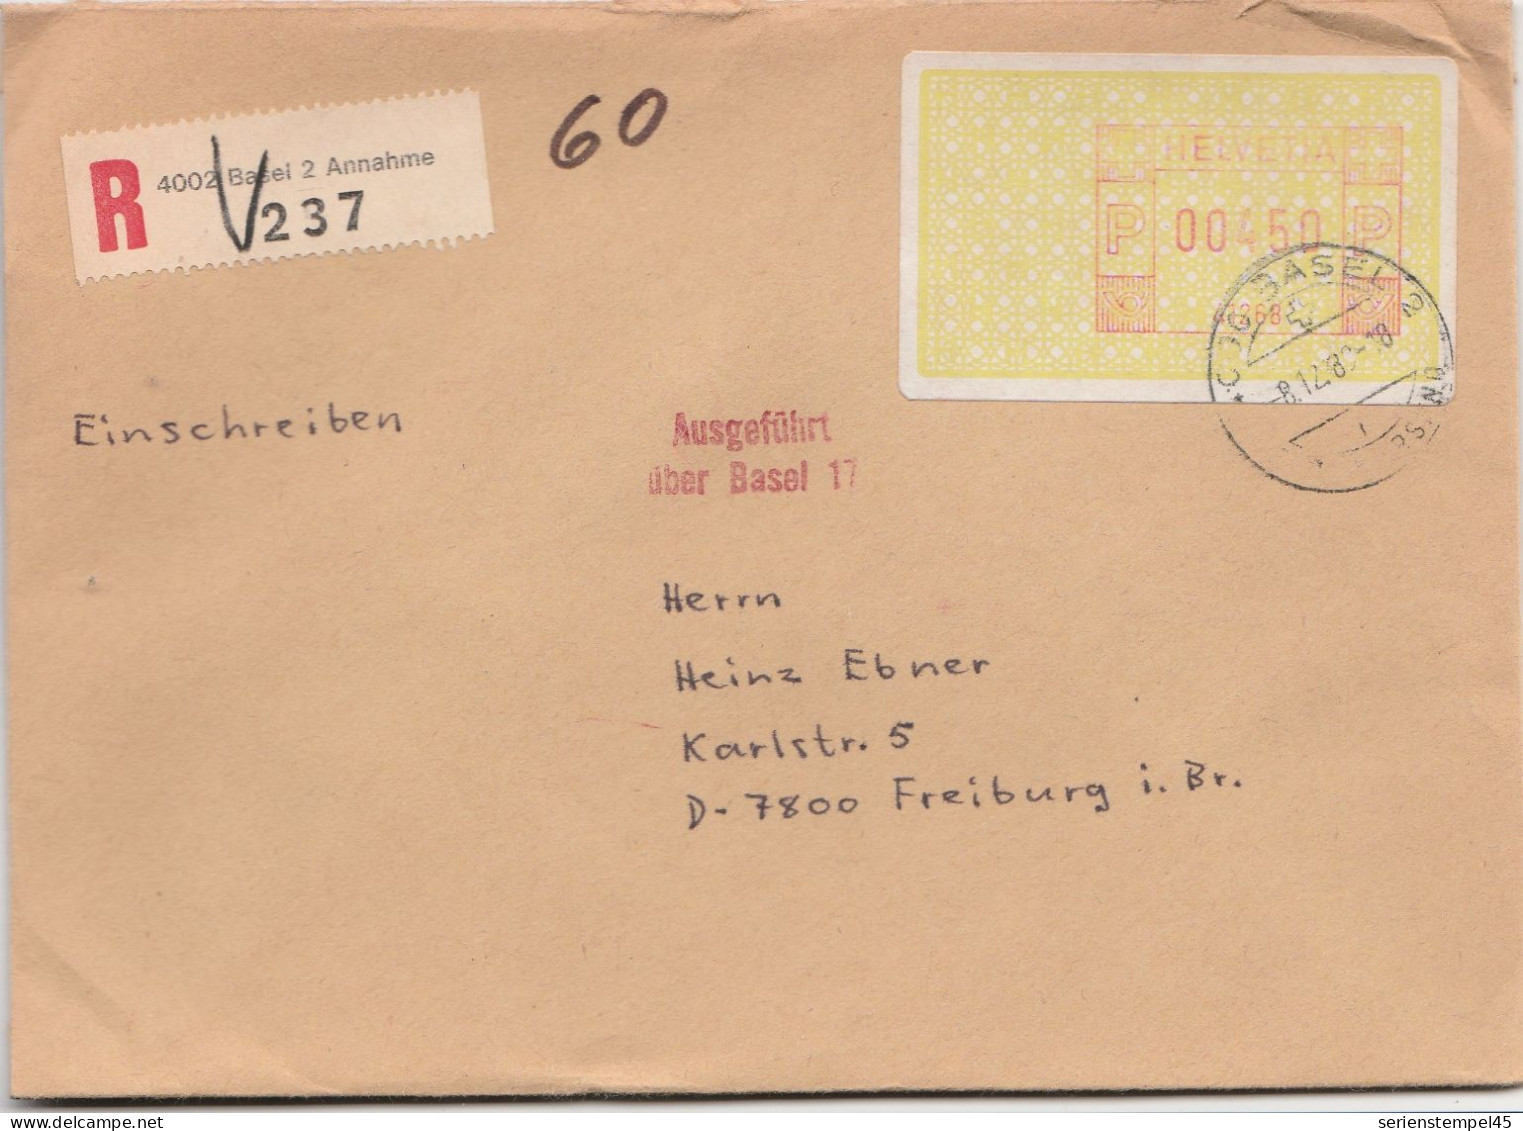 Schweiz Einschreiben Brief 4002 Basel 2 Annahme Mit Freistempel 41268 Porto 450 P 1989 - Frankeermachinen